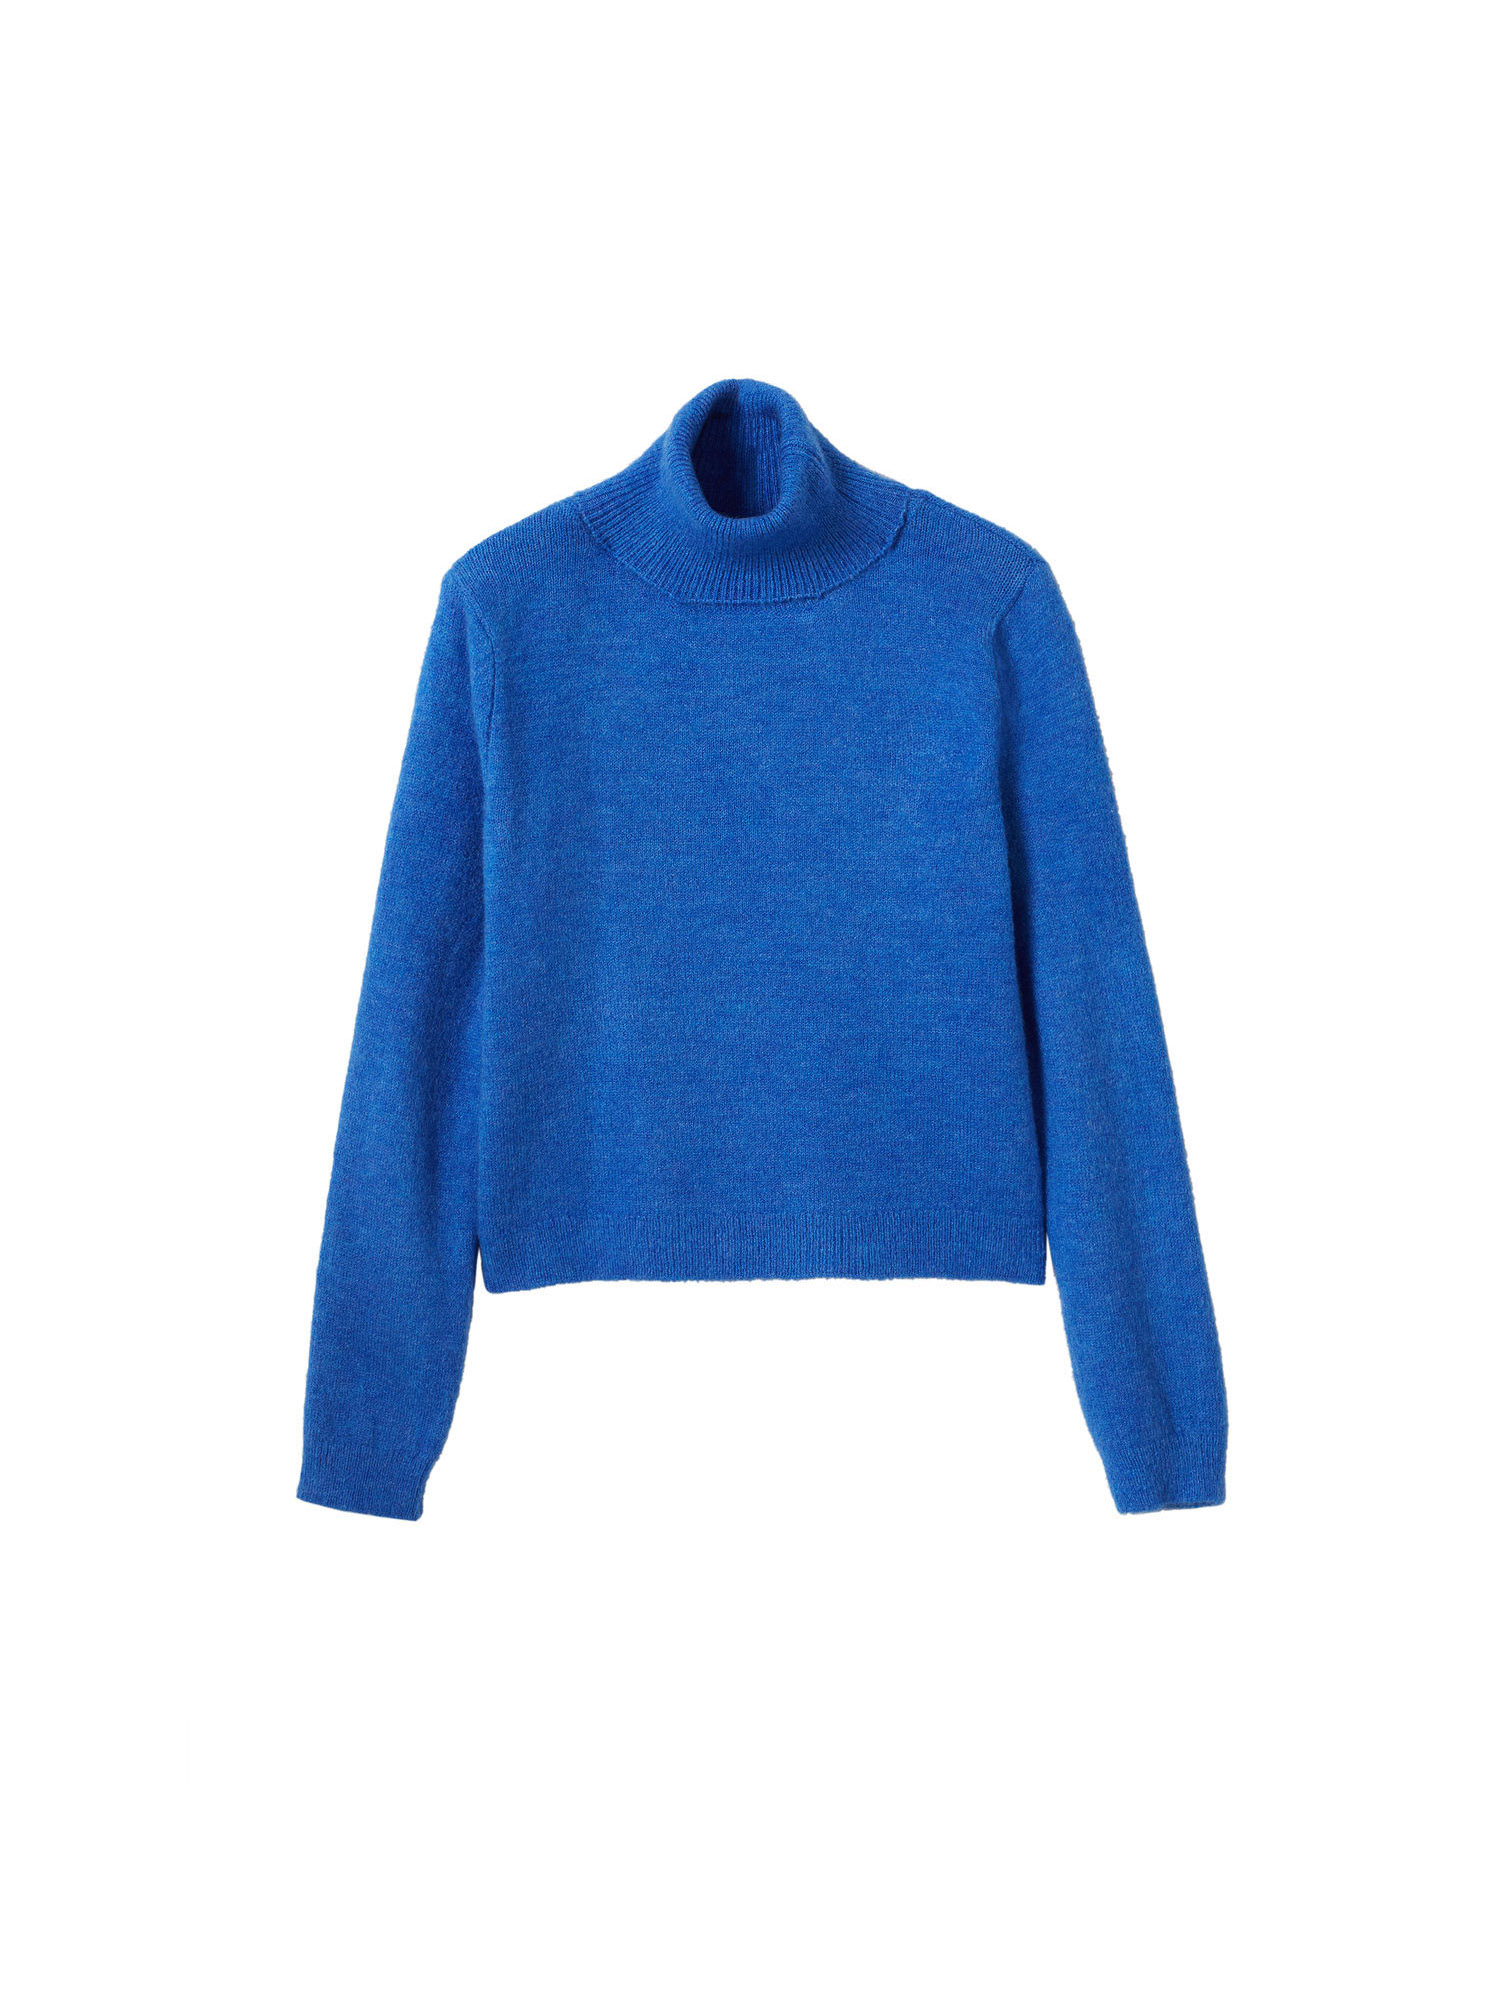 Odzież Swetry MANGO Sweter Iced w kolorze Królewski Błękitm 